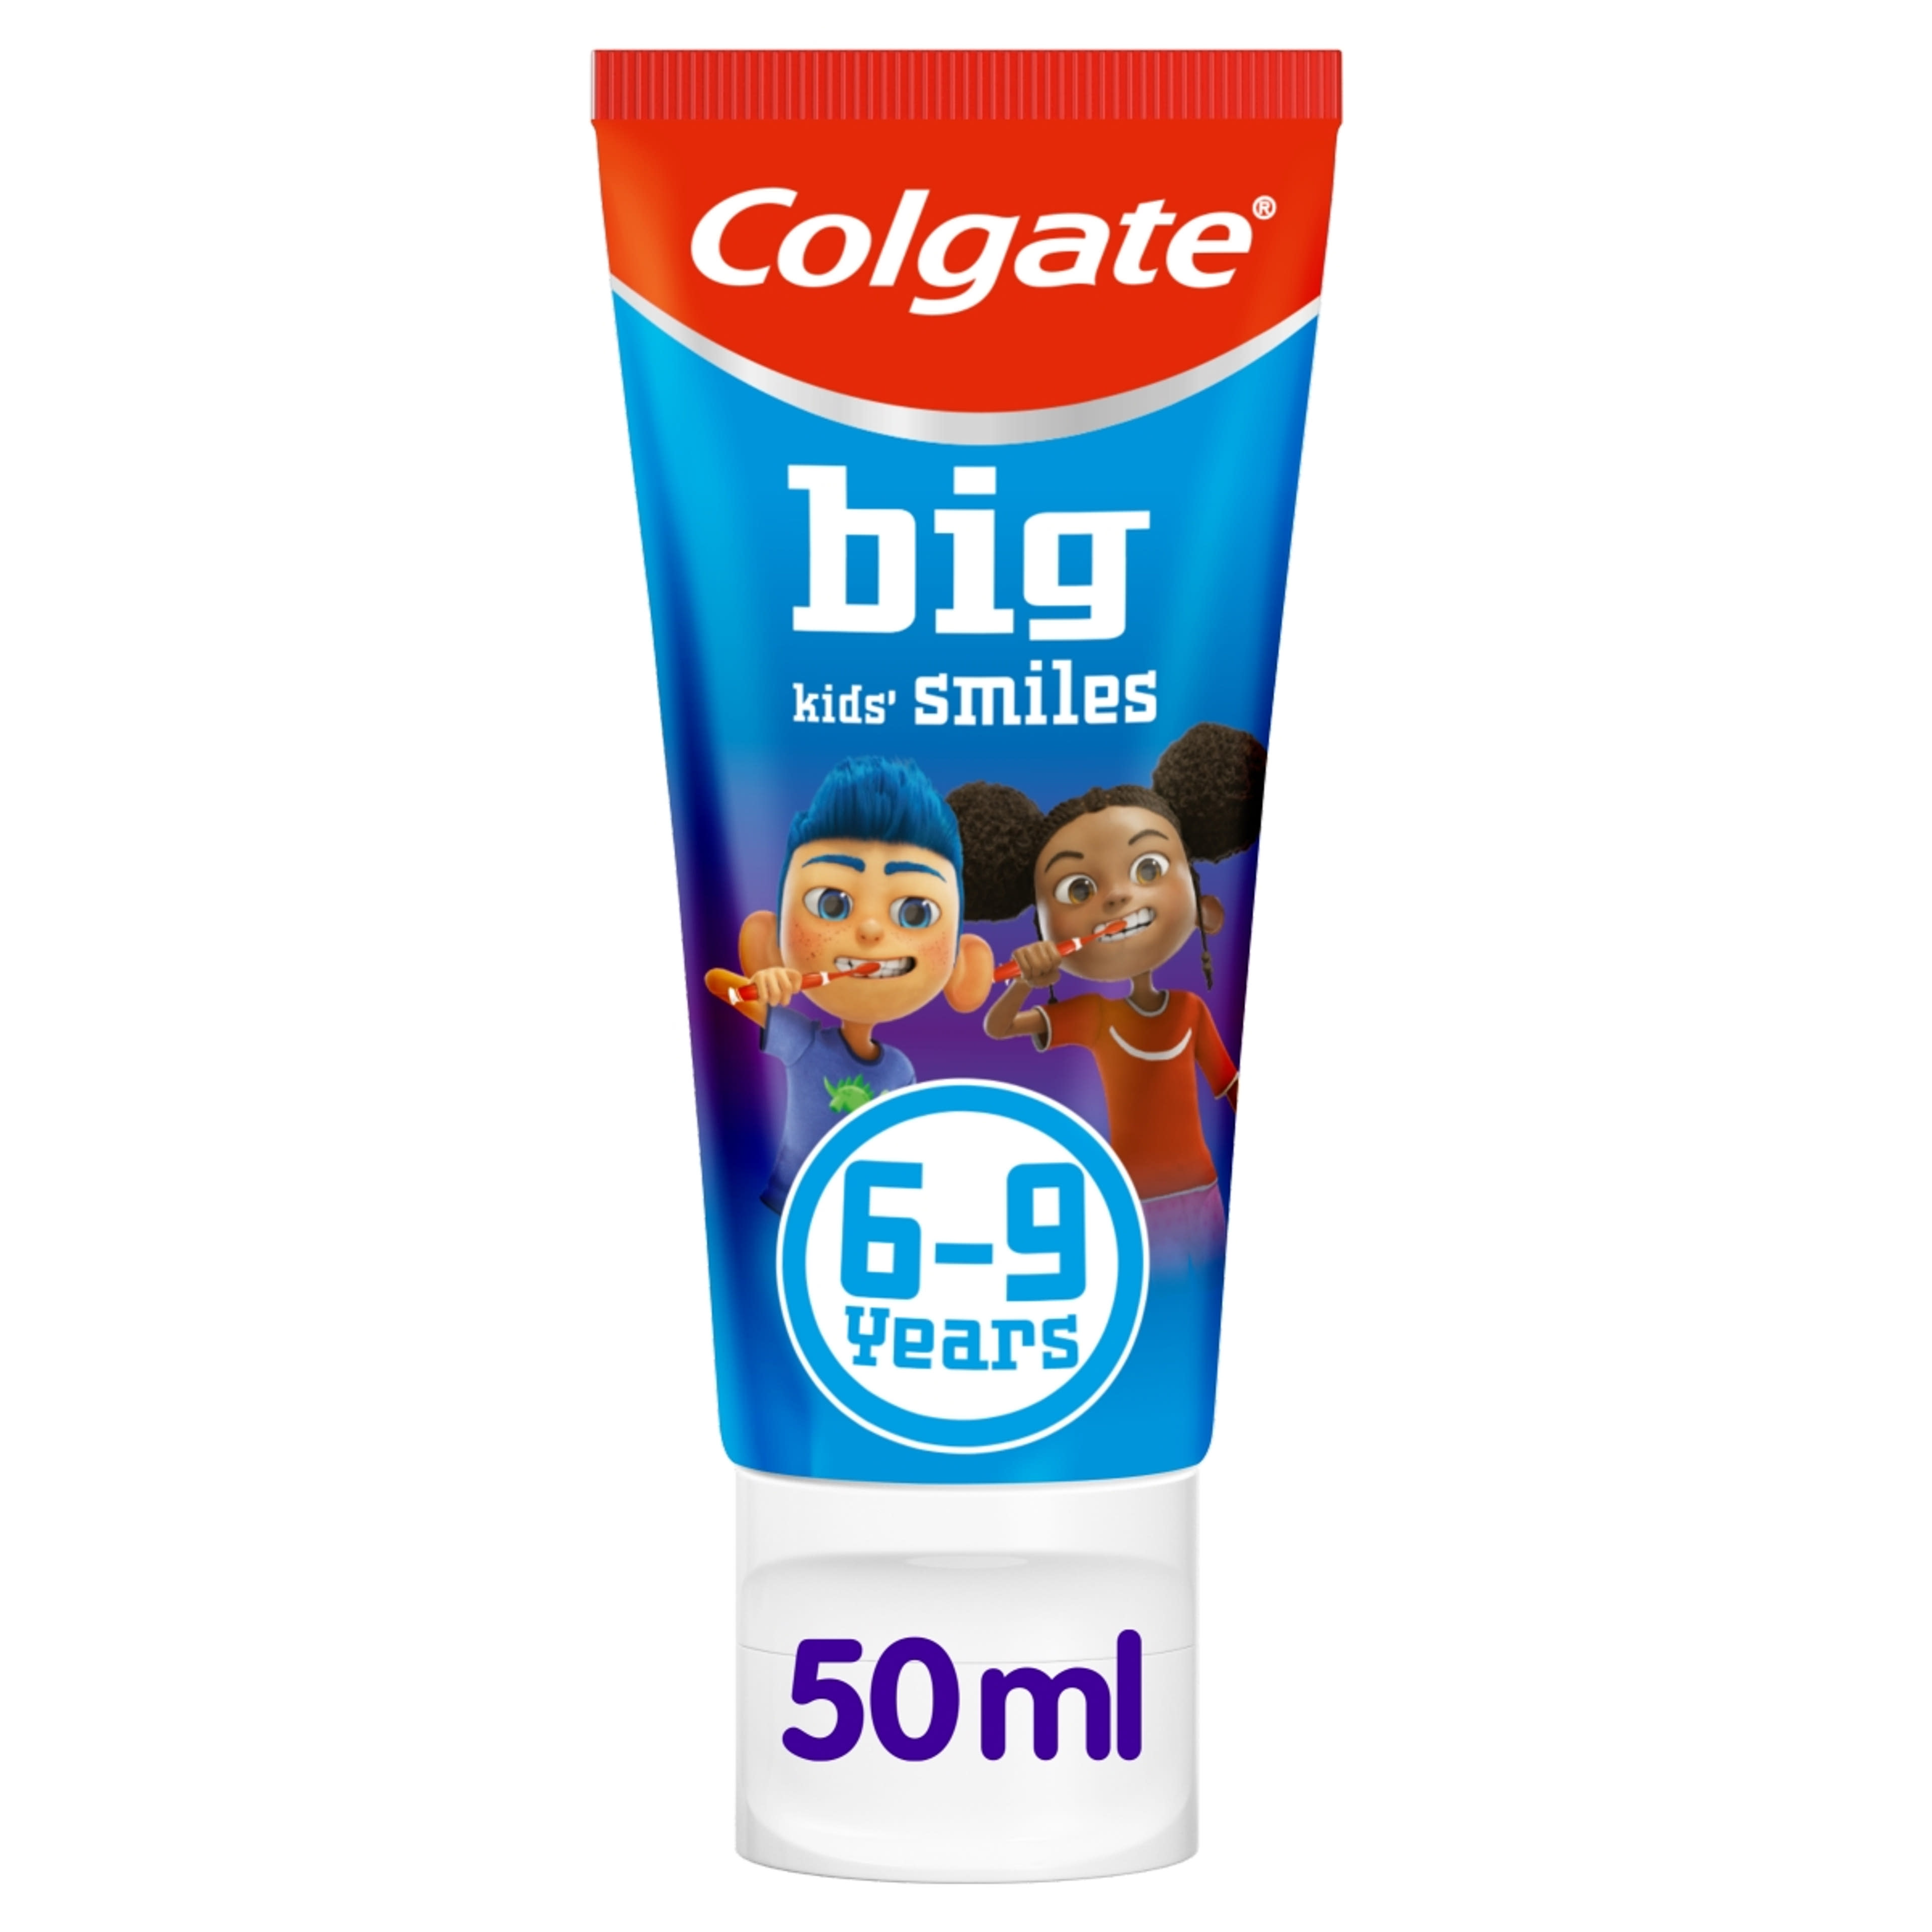 Colgate Kids Smiles fogkrém 6-9 éves gyerekek részére - 50 ml-9